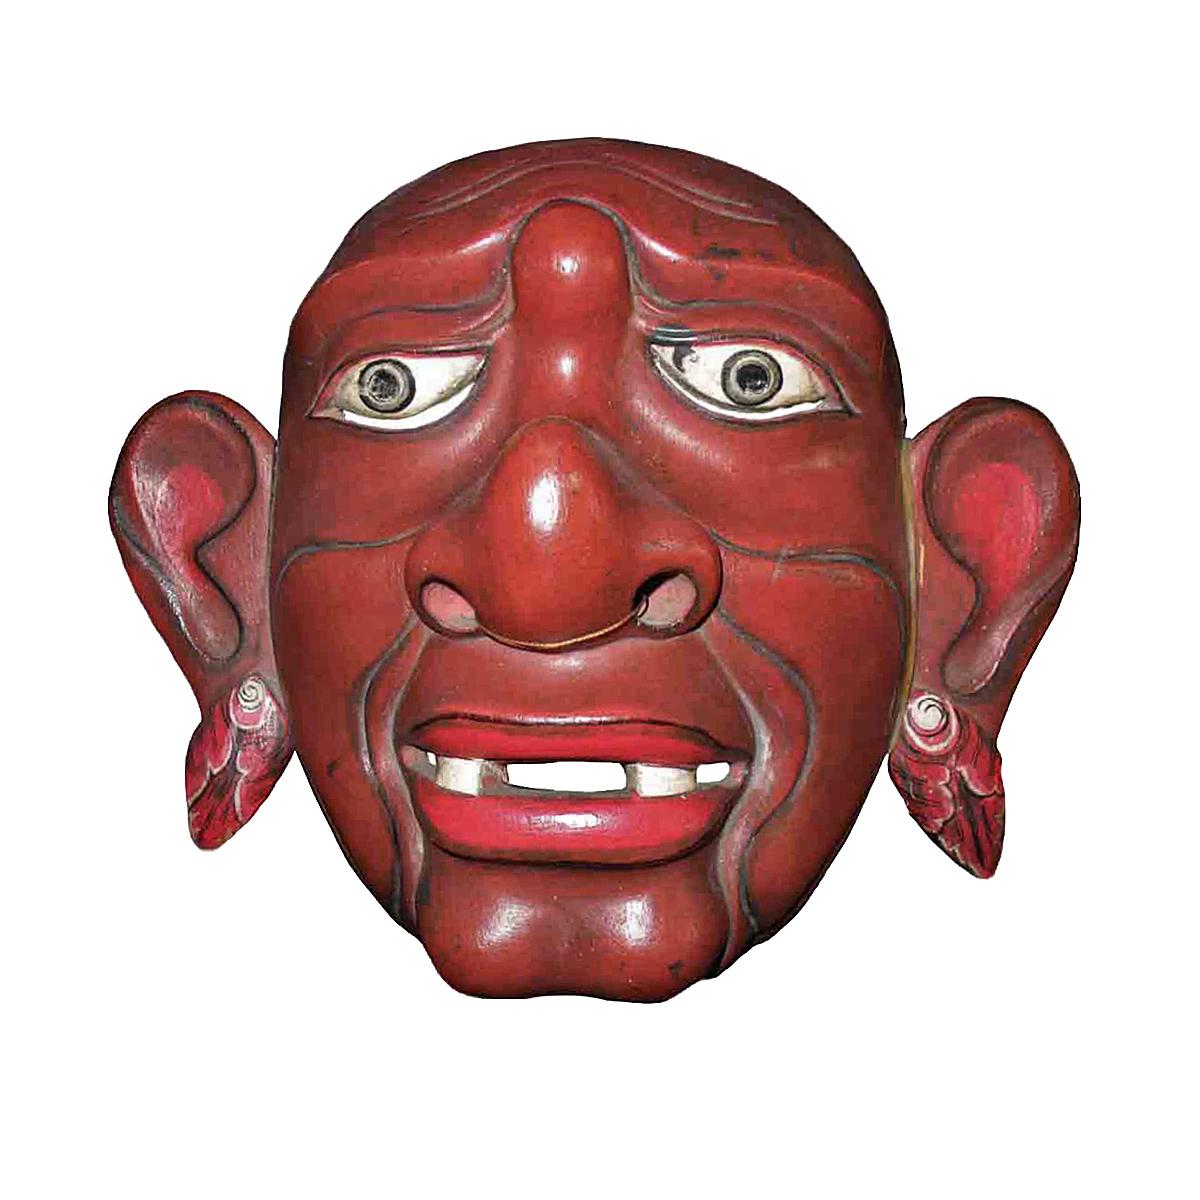 Un masque de théâtre vintage de Bali, Indonésie, vers 1975-1980. 
Teck sculpté à la main et polychromé, monté sur un support en métal noir.

Ce type de masque est utilisé lors des danses indonésiennes Topeng ou théâtre de masques, où des